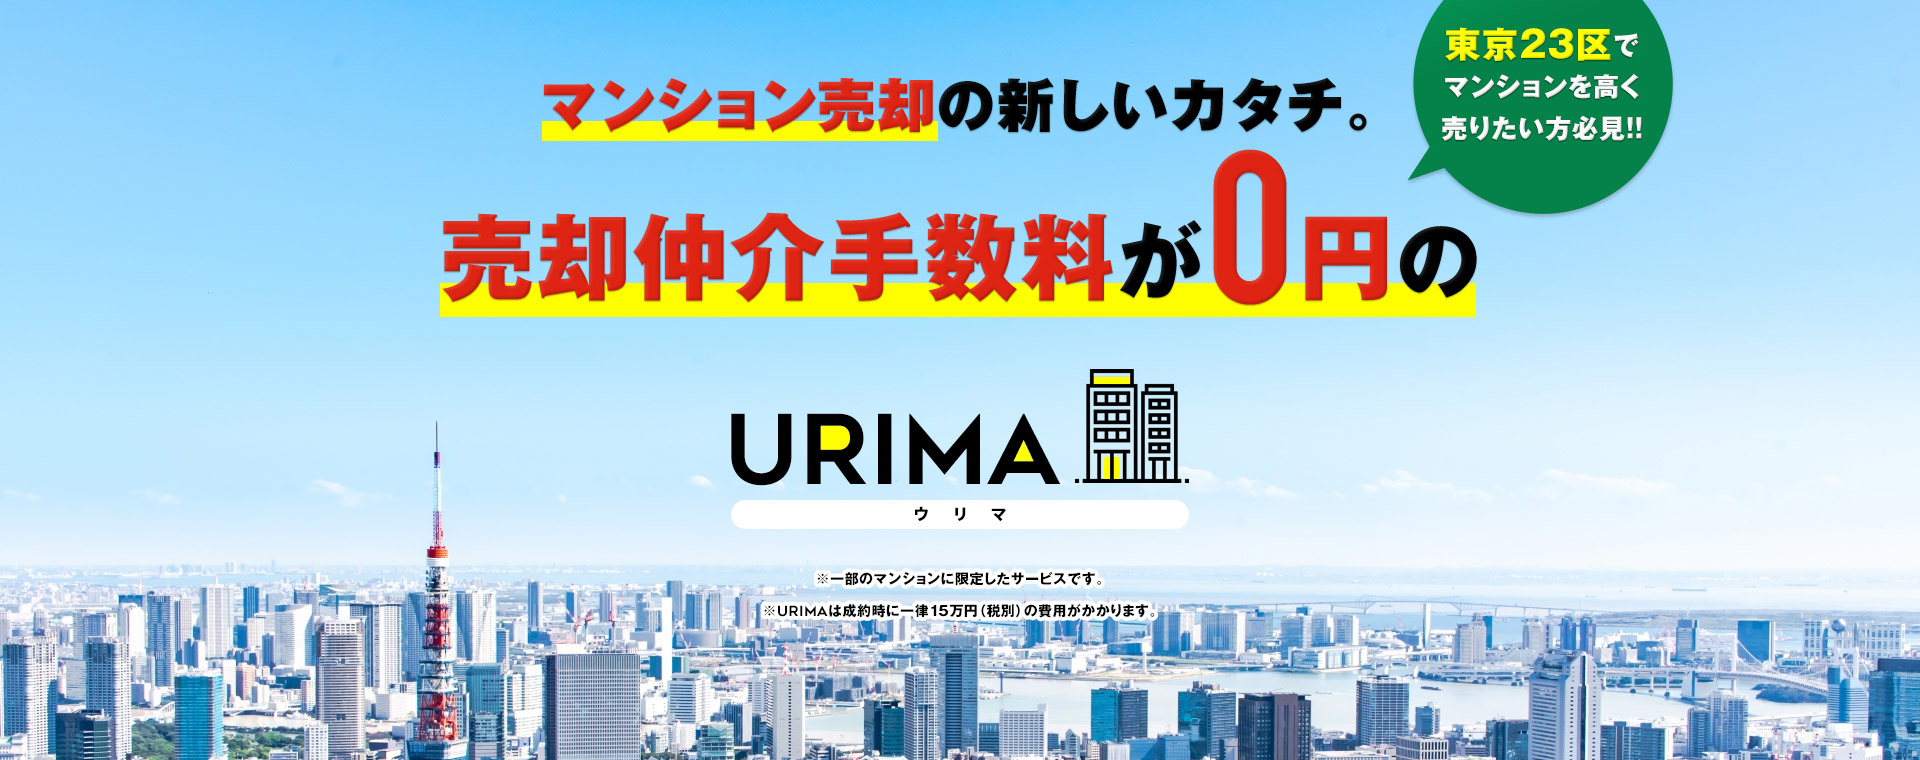 マンション売却の新しいカタチ。売却仲介手数料が0円のURIMA(ウリマ) 東京23区でマンションを高く売りたい方必見!! ※一部のマンションに限定したサービスです。 ※URIMAは成約時に一律15万円（税別）の費用がかかります。